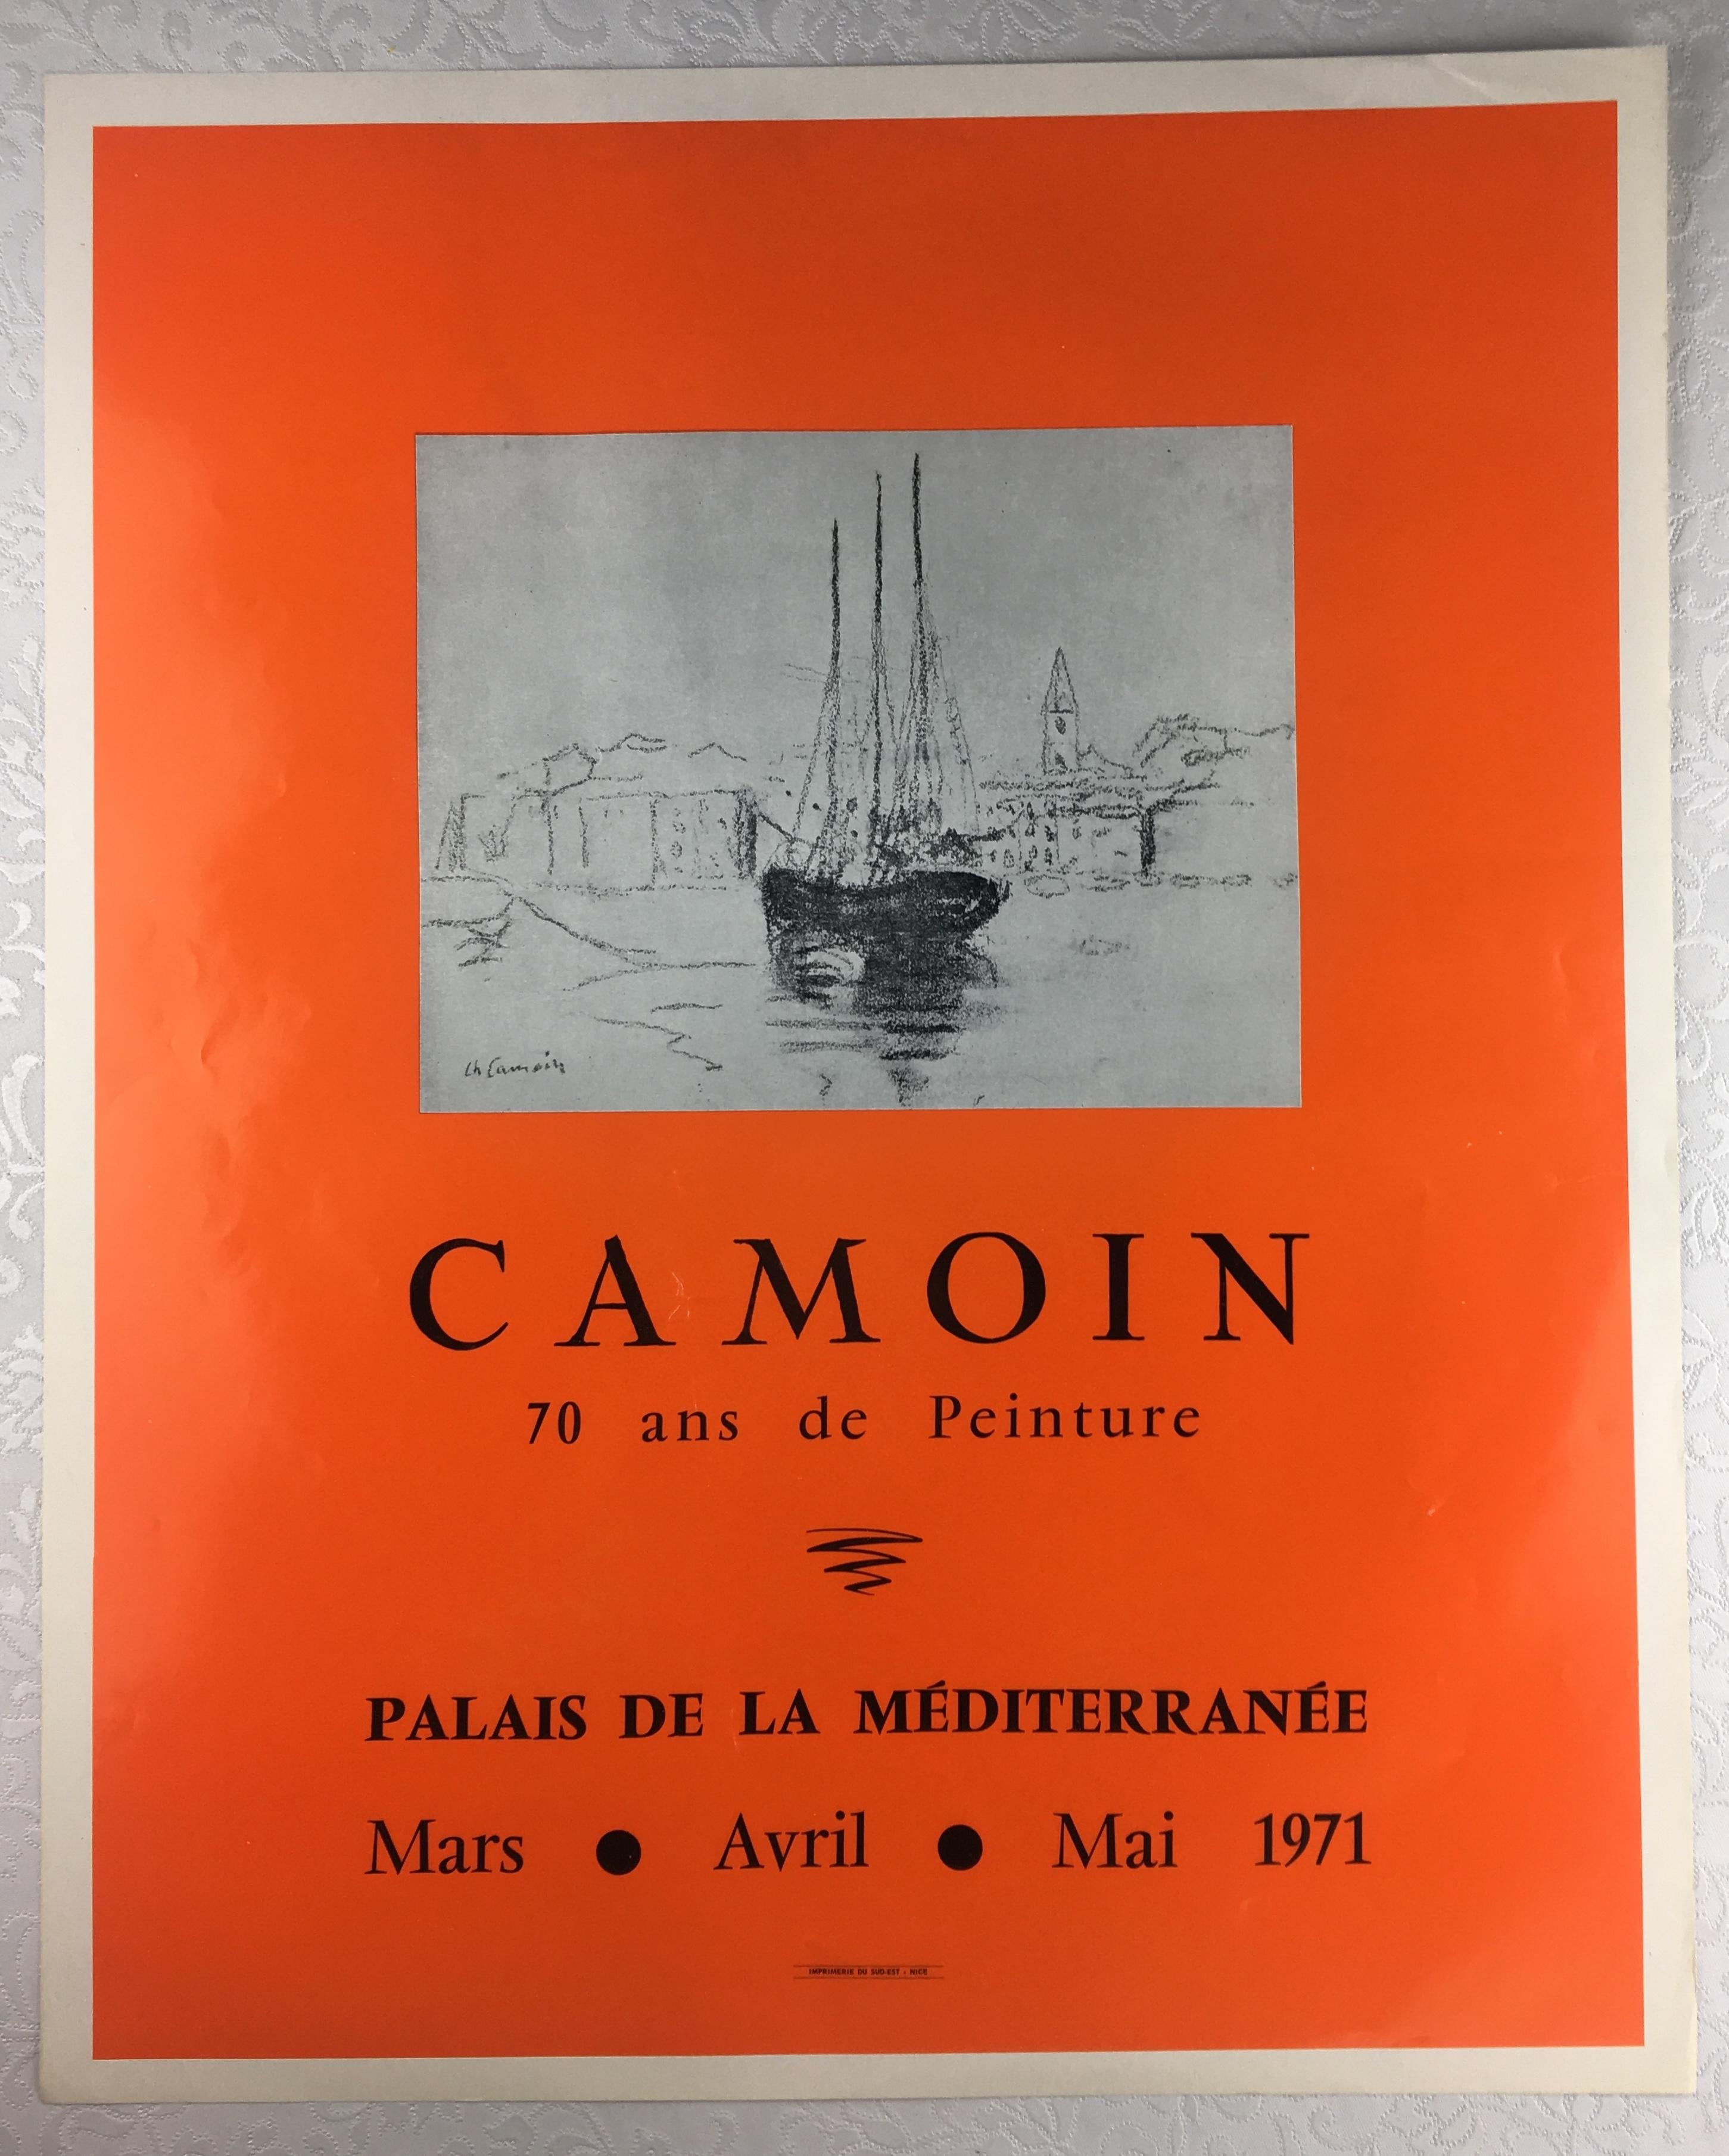 Affiche originale d'une exposition du peintre français Charles Camoin, de couleur orange vif avec des reflets beiges.

Charles Camoin (23 septembre 1879-20 mai 1965) est un peintre paysagiste expressionniste français associé aux Fauves. Il a